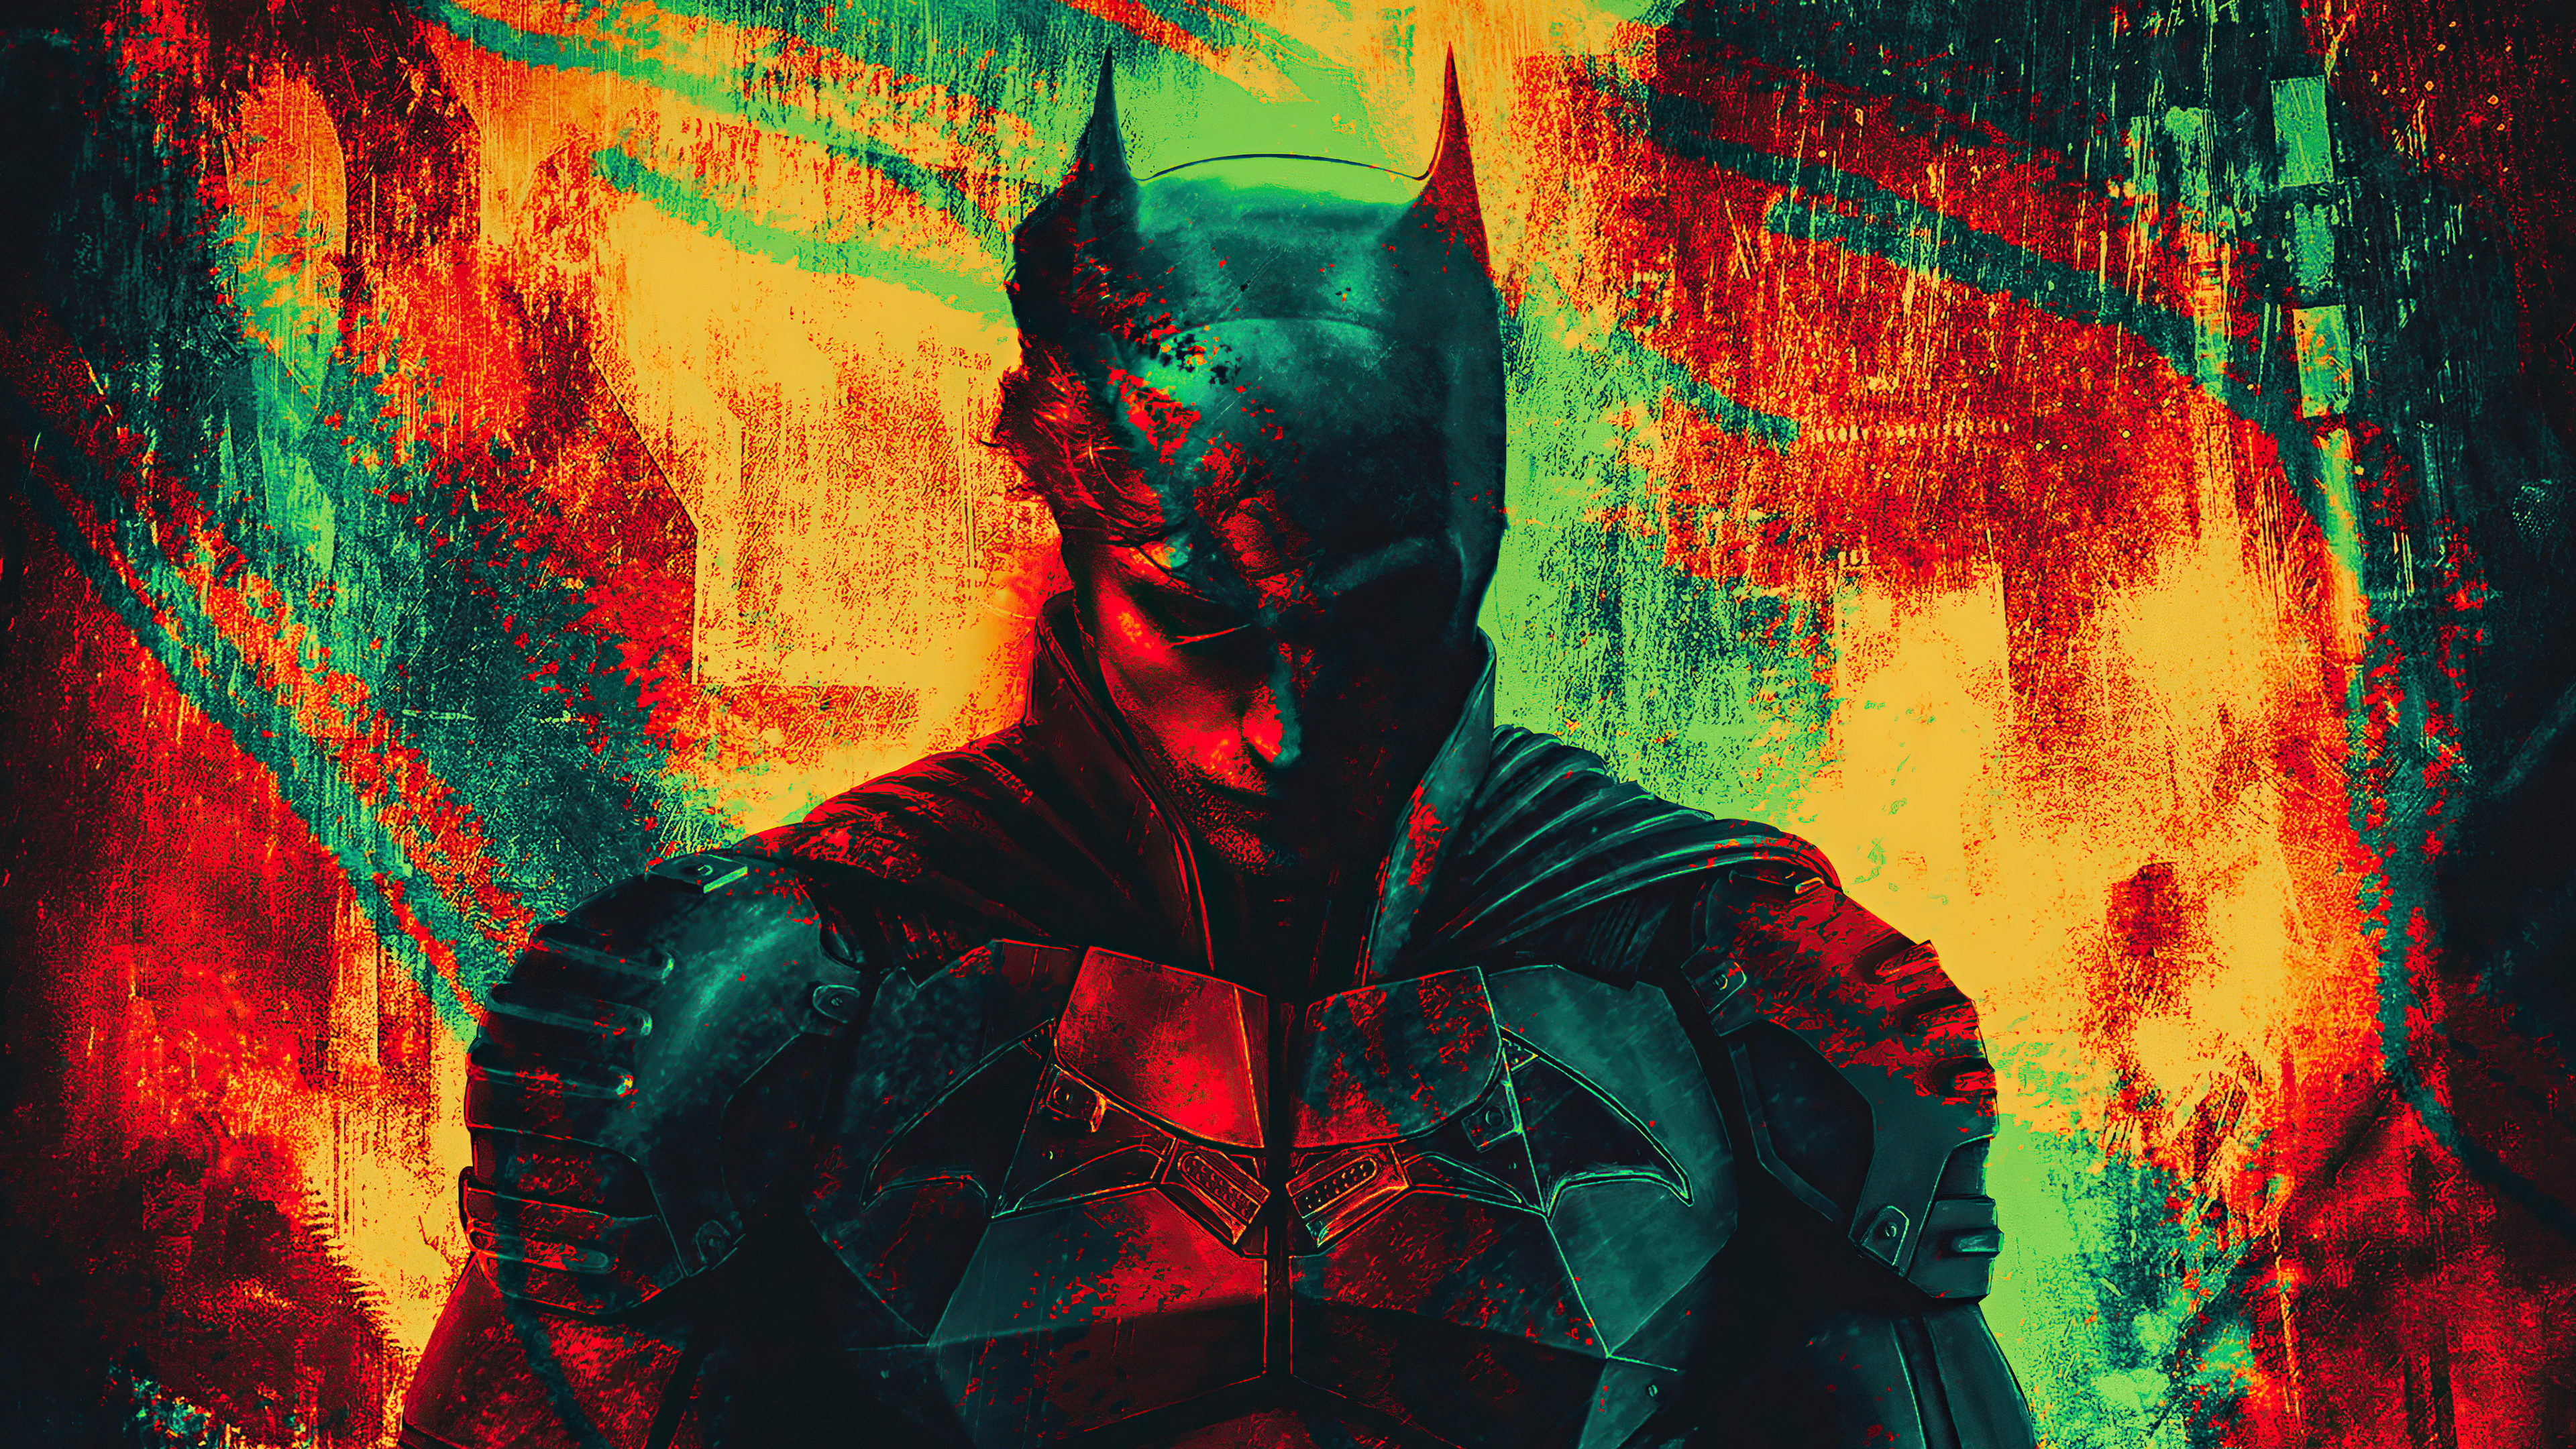 The Batman 4k Ultra HD Wallpaper by Hasin Ishrak Rafi